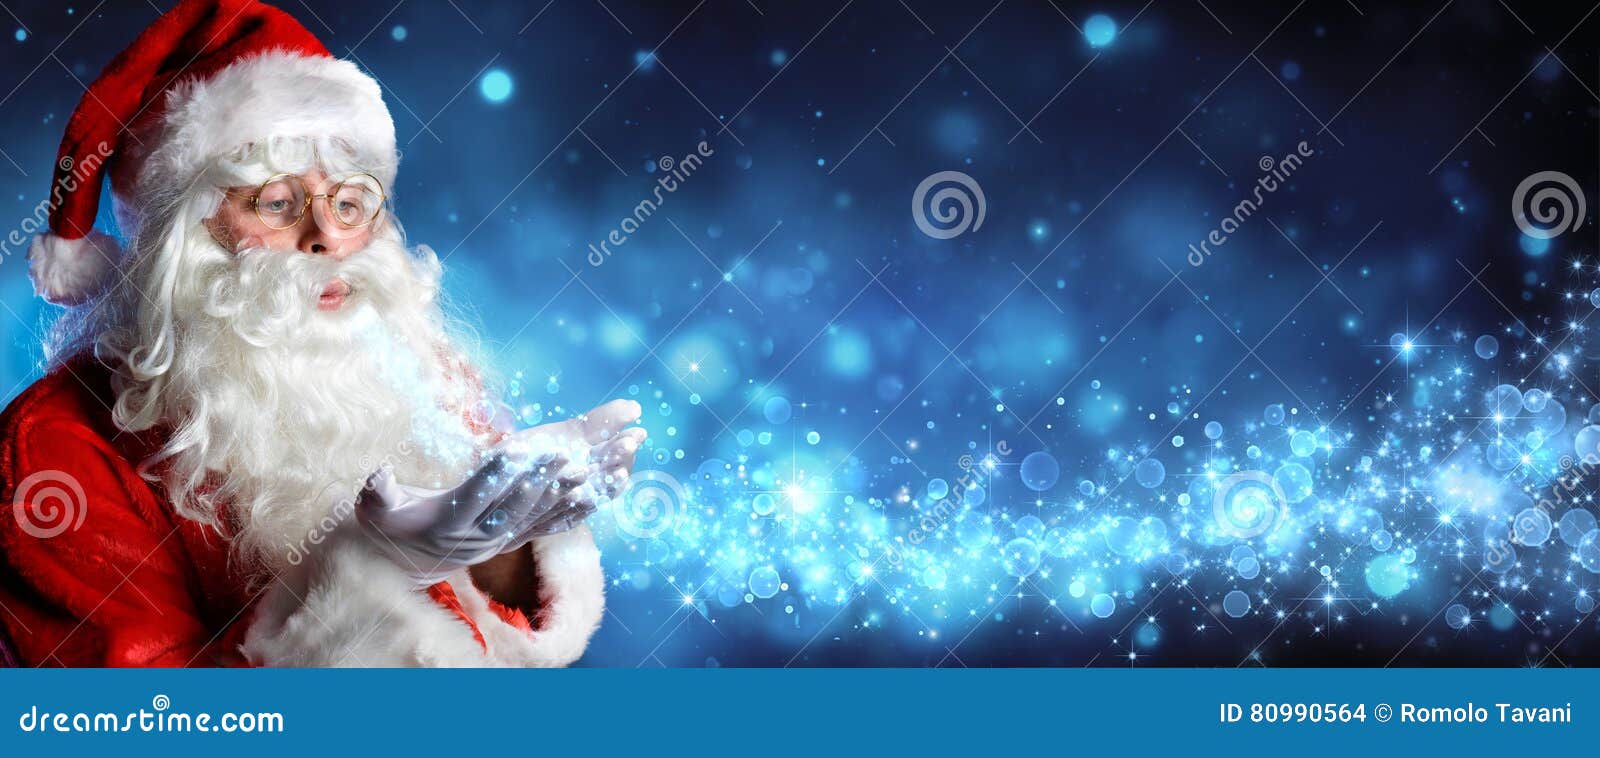 santa claus blowing magic christmas stars